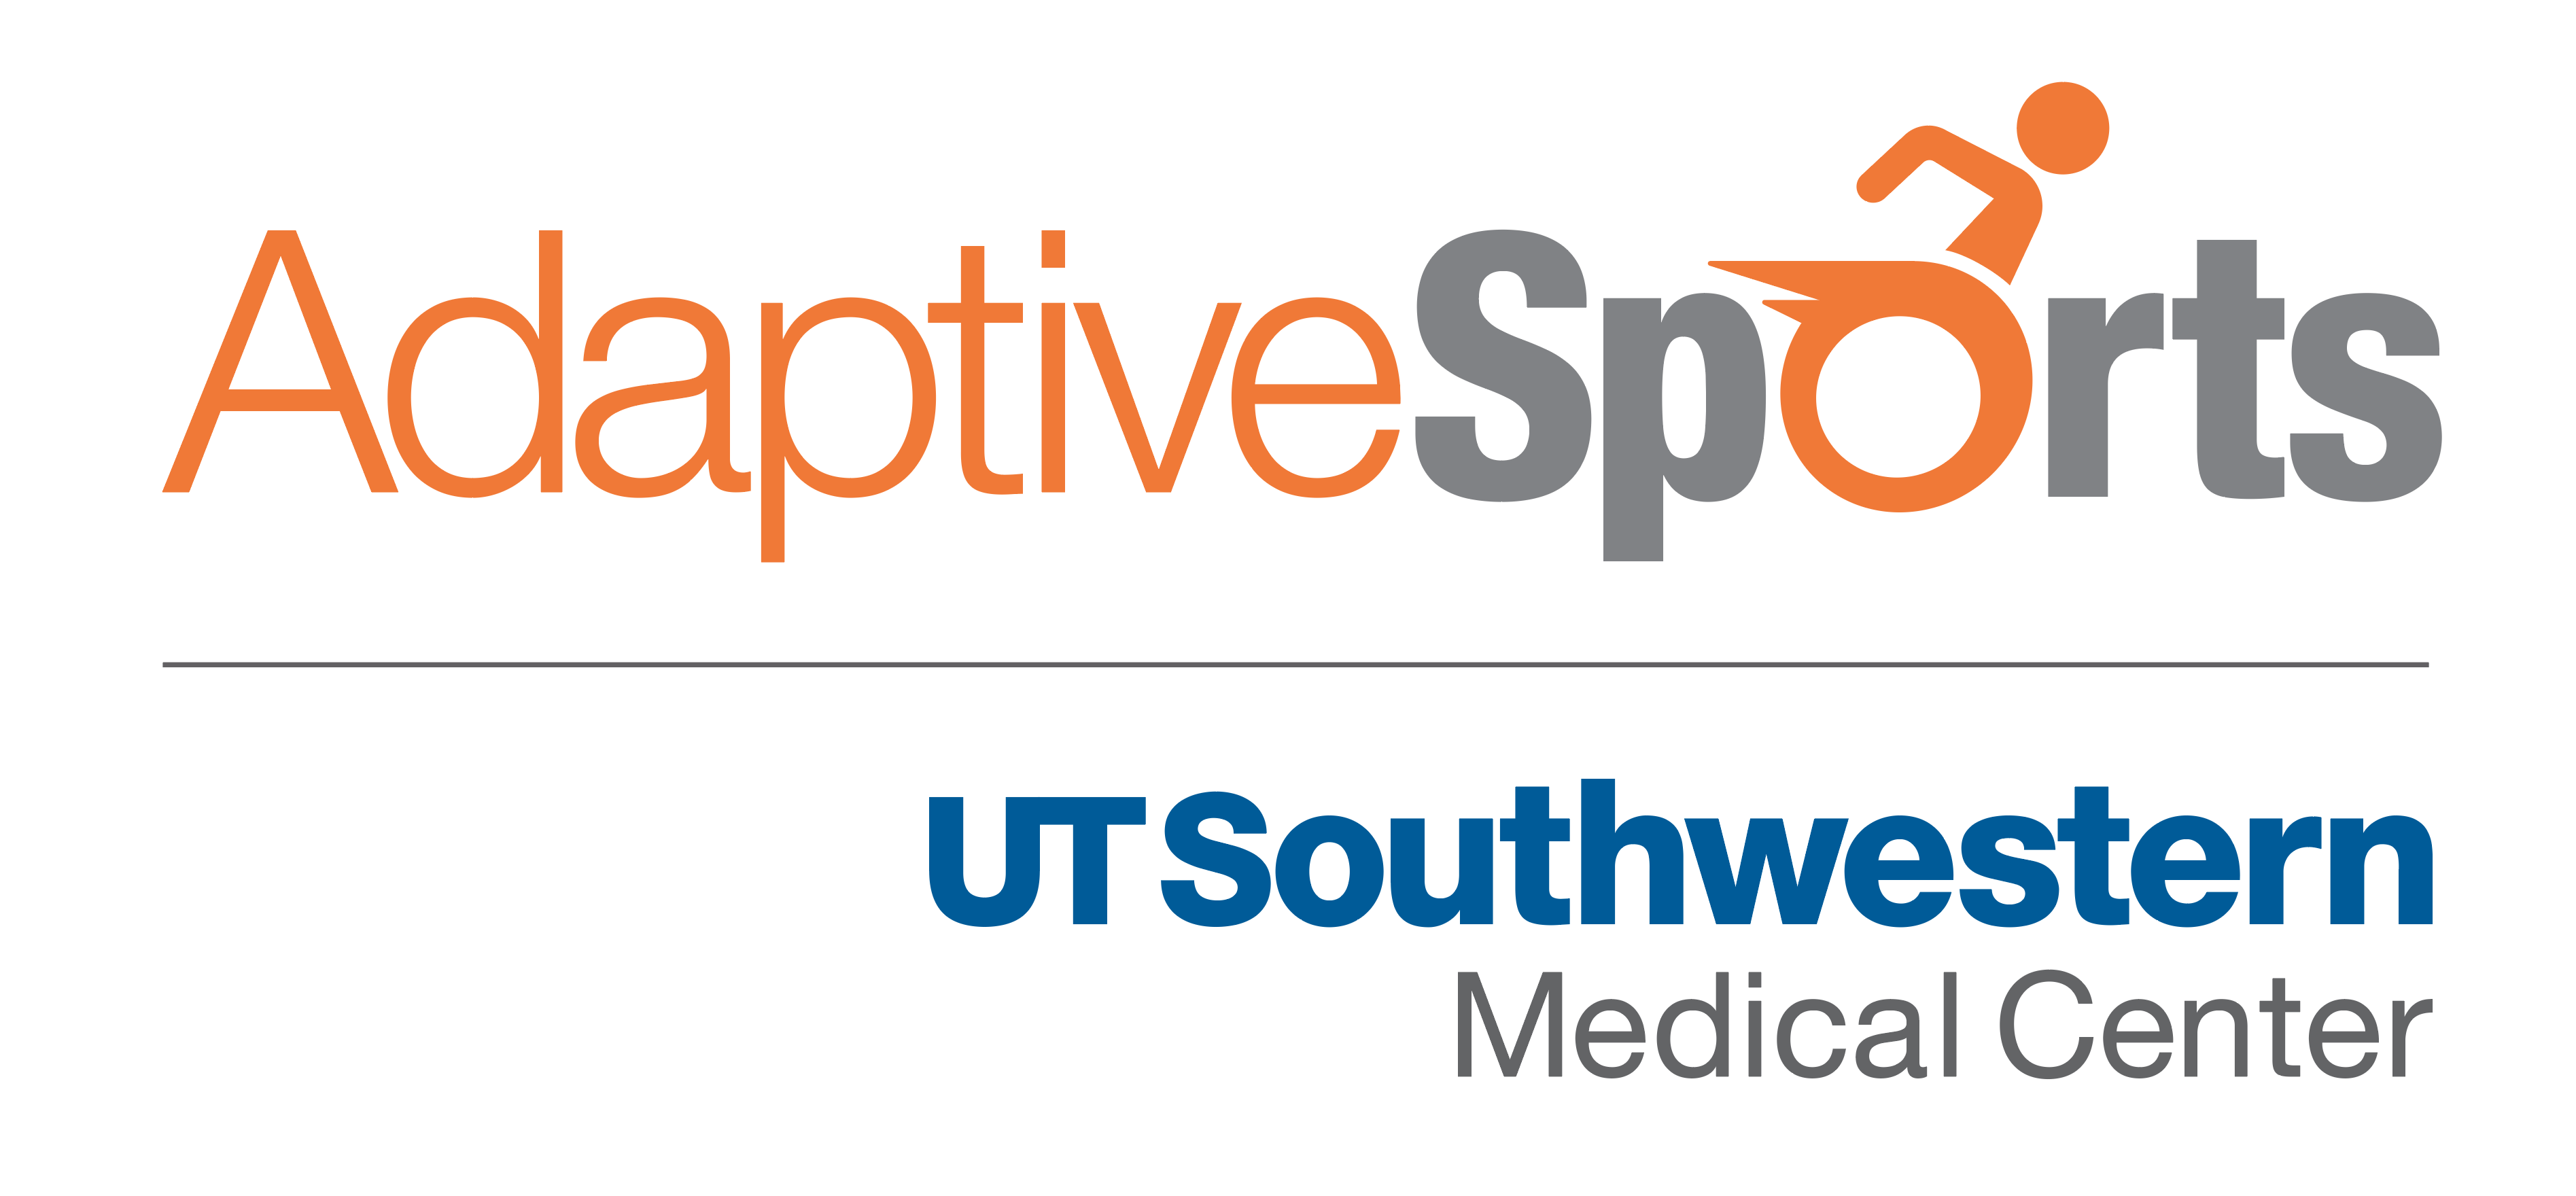 UTSW Logo - Adaptive Sports Expo | Physical Medicine and Rehabilitation | UT ...